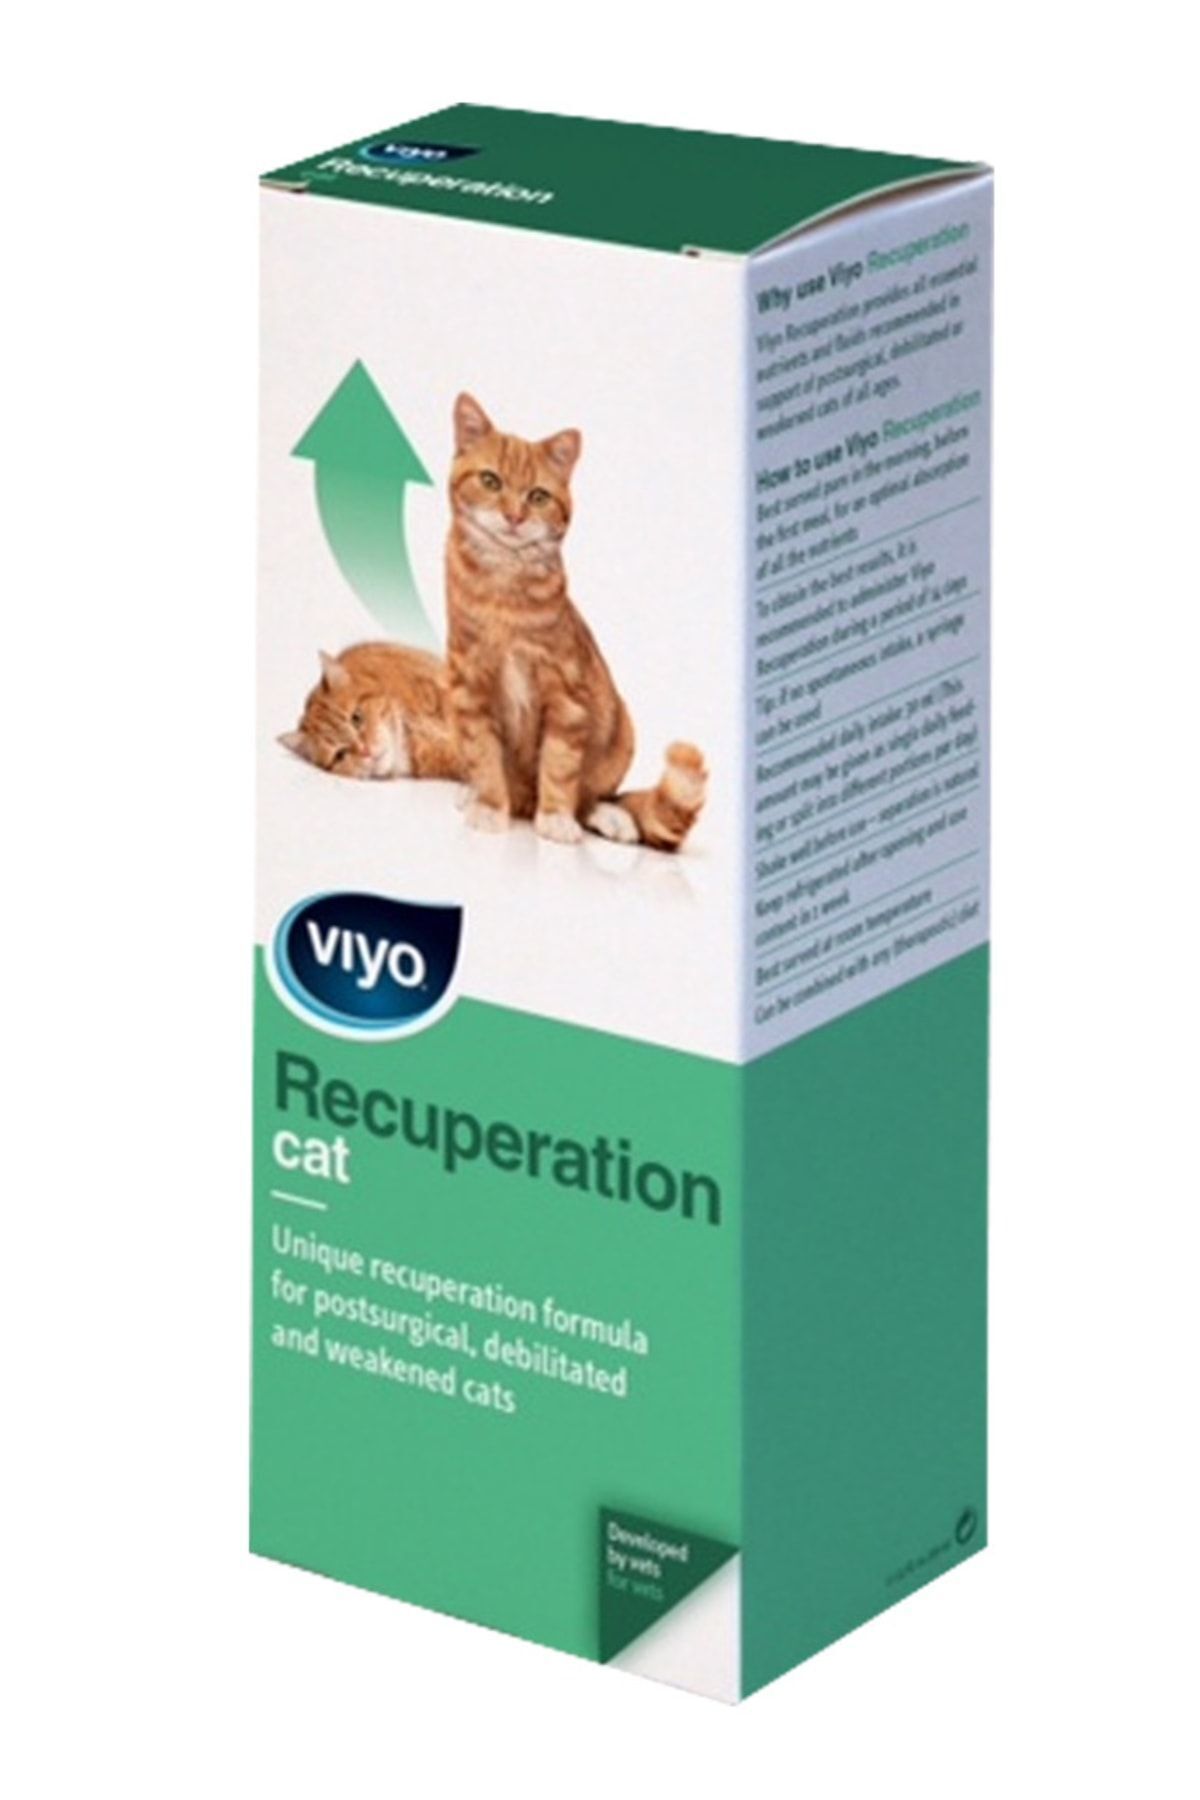 Viyo Recuperation Kedi Ek Besin Takviyesi 150 ml